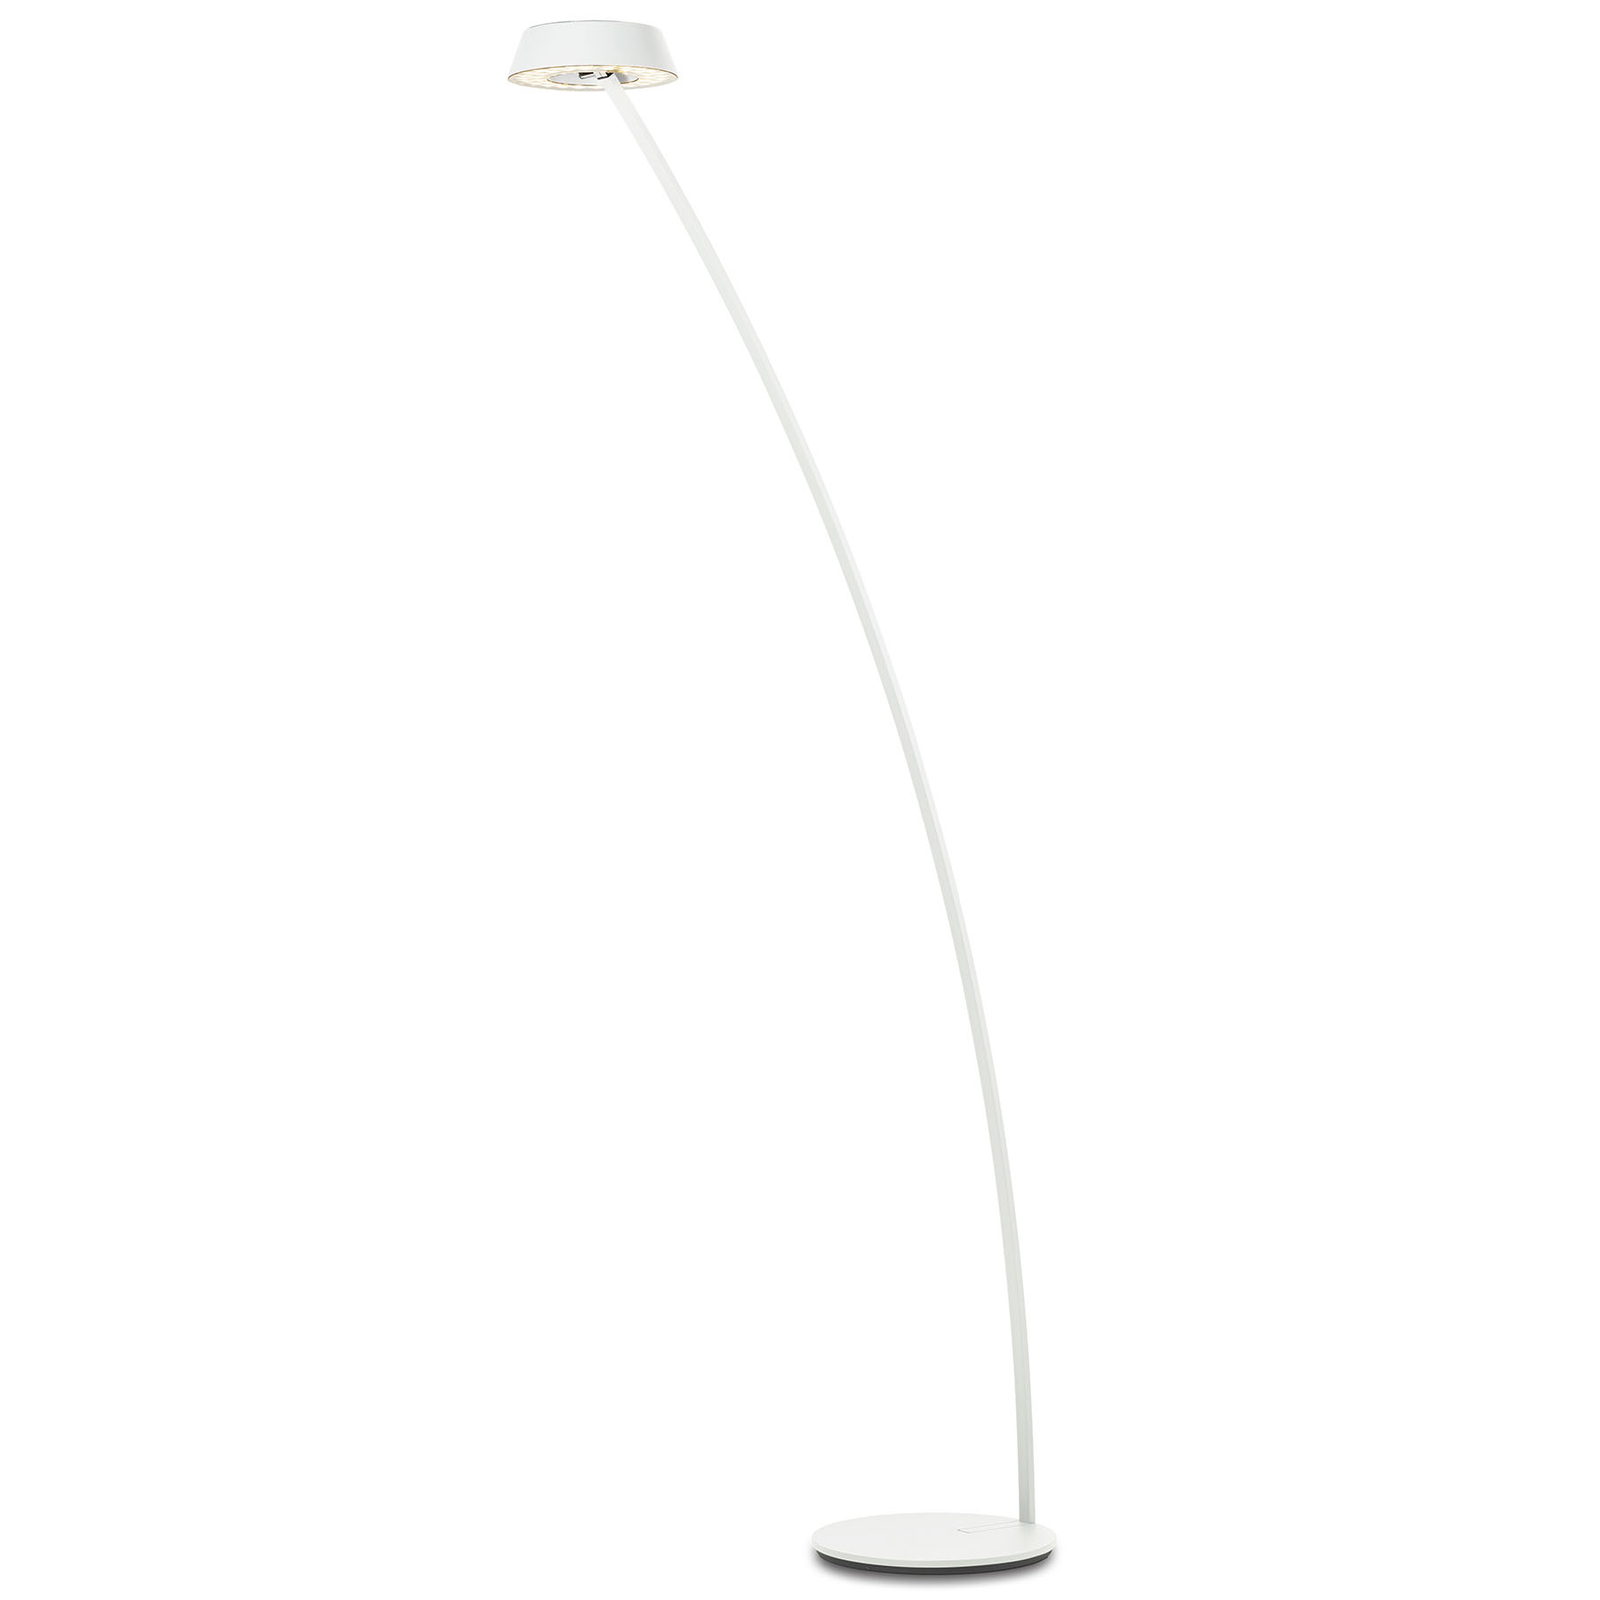 OLIGO Glance LED-Stehlampe gebogen weiß matt